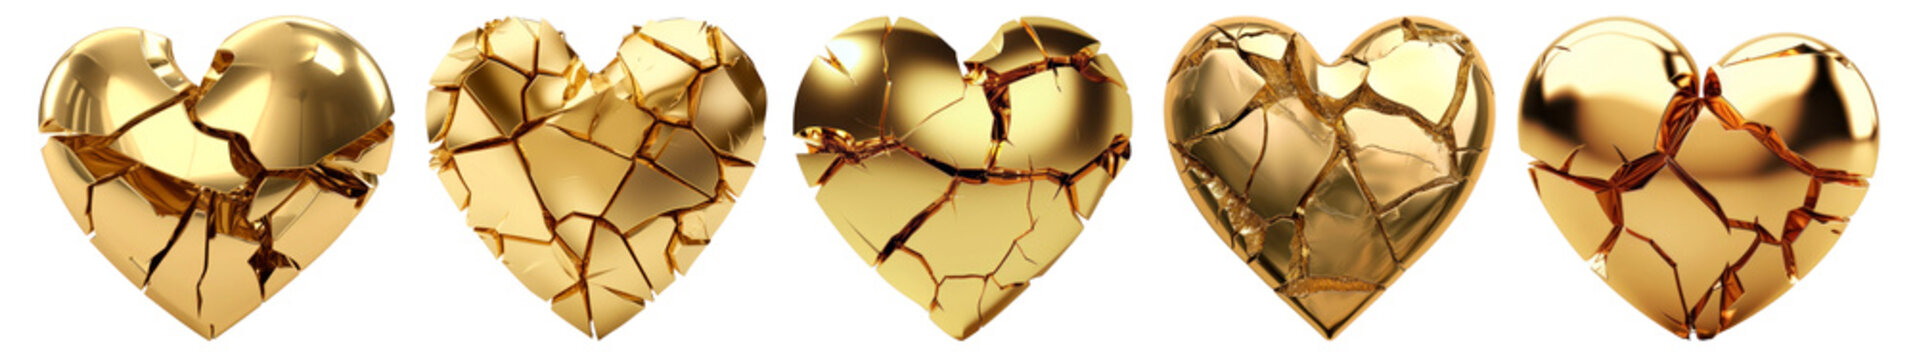 3D gold Broken hearts png on transparent background